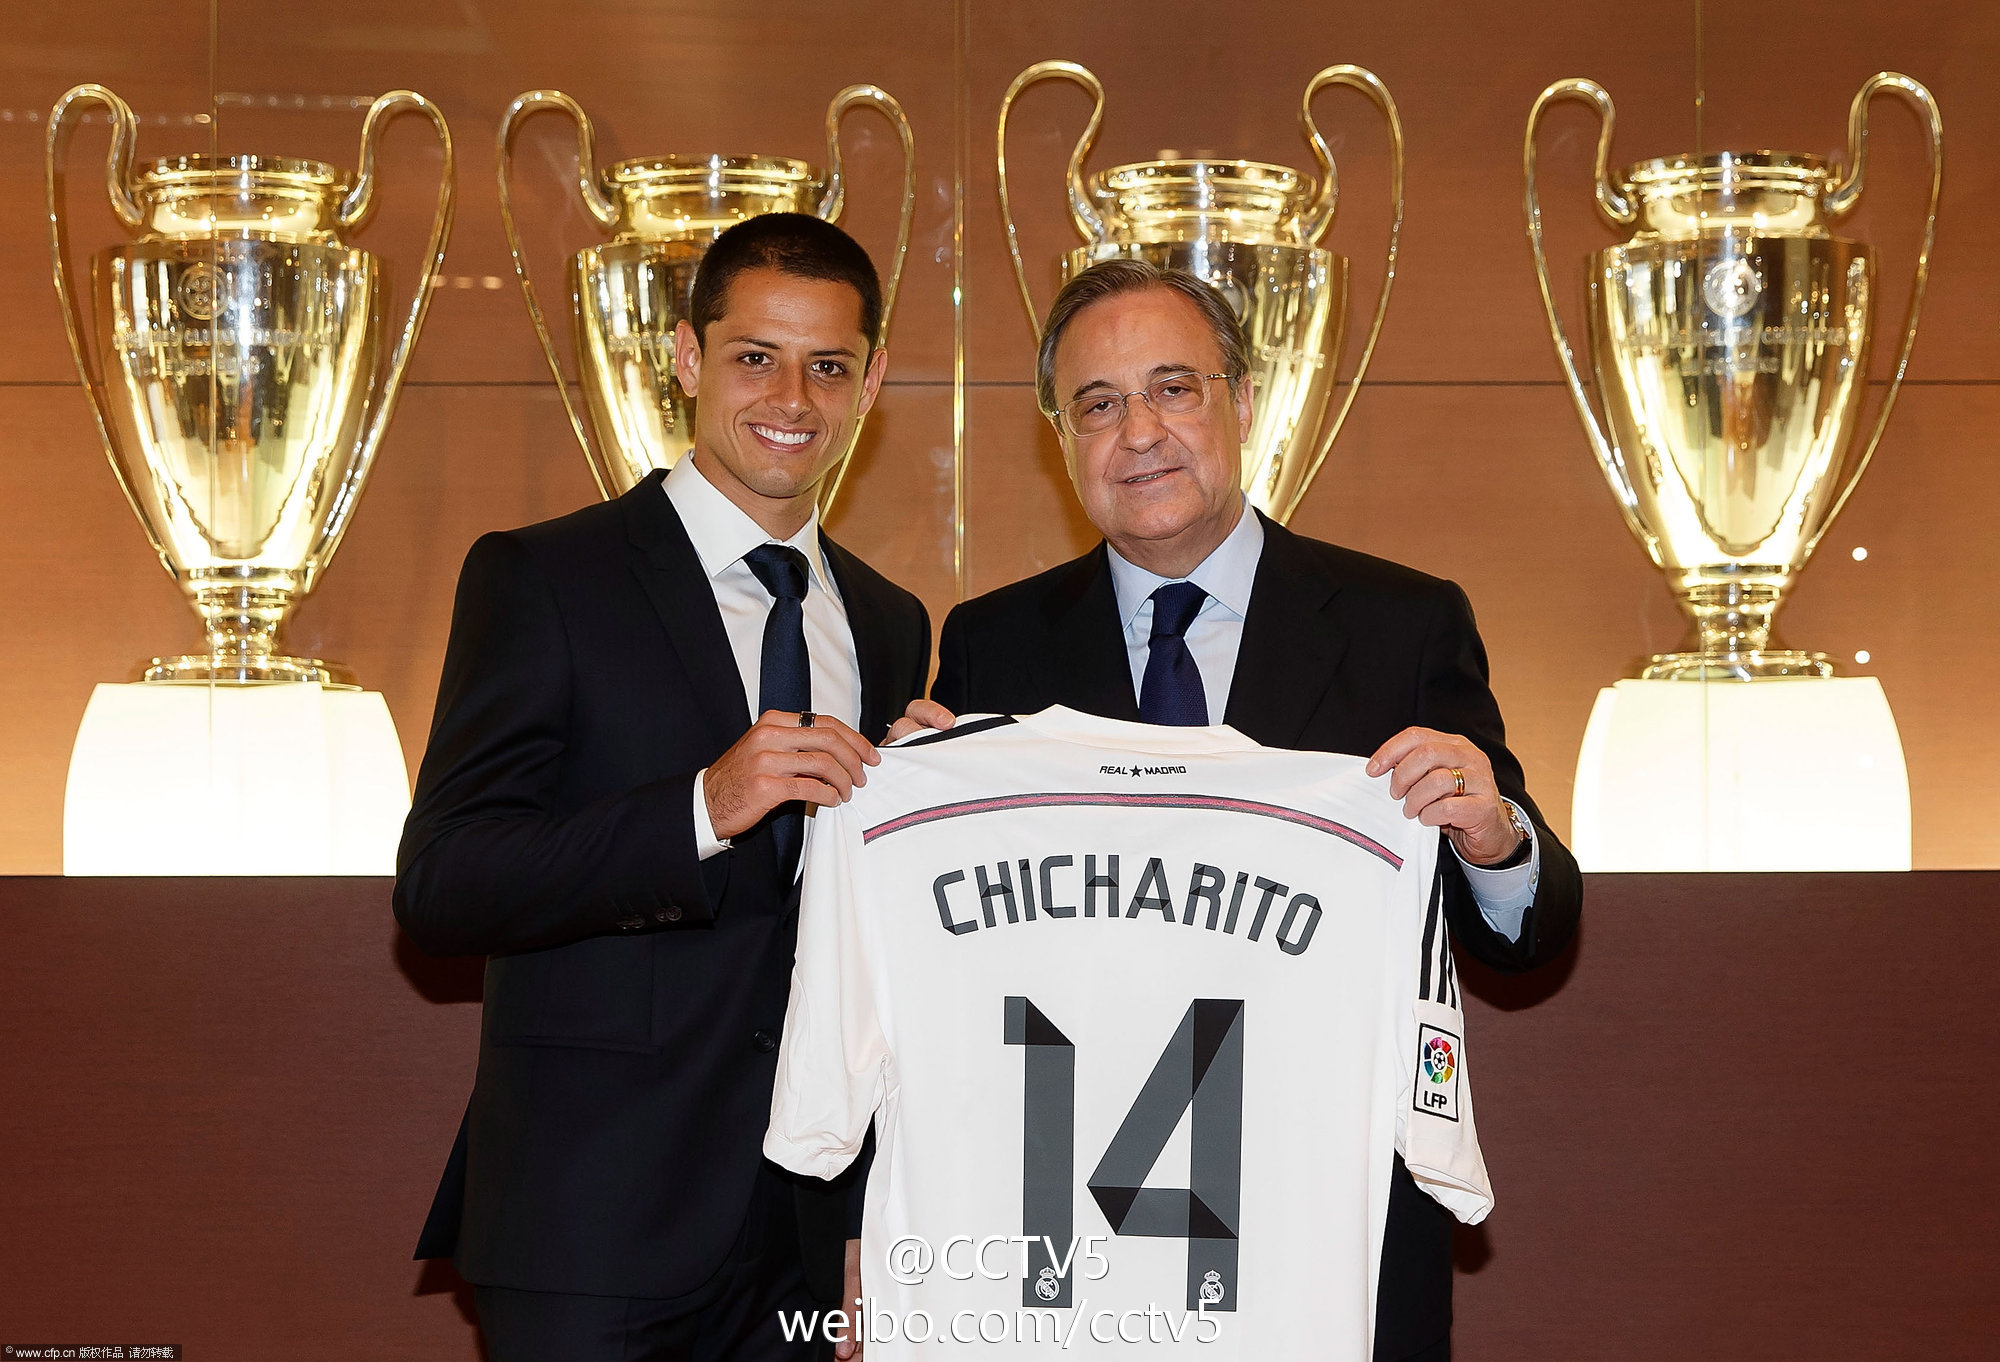 هوگو سانچز: مطمئنم چیچاریتو در رئال خوب خواهد بود